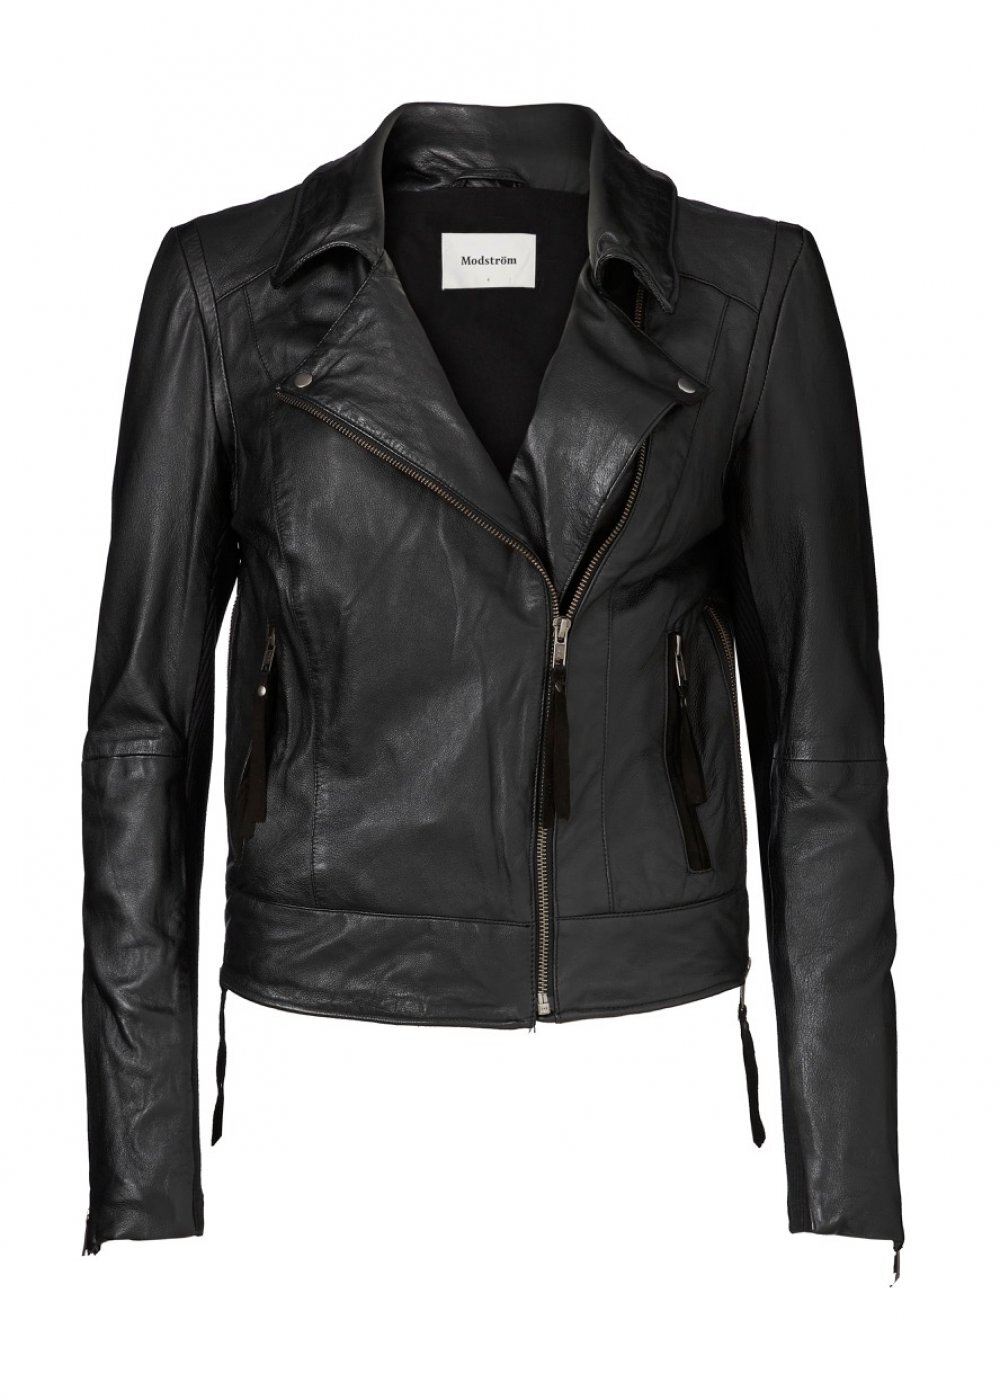 MO leather jacket Black - Moods Fashion